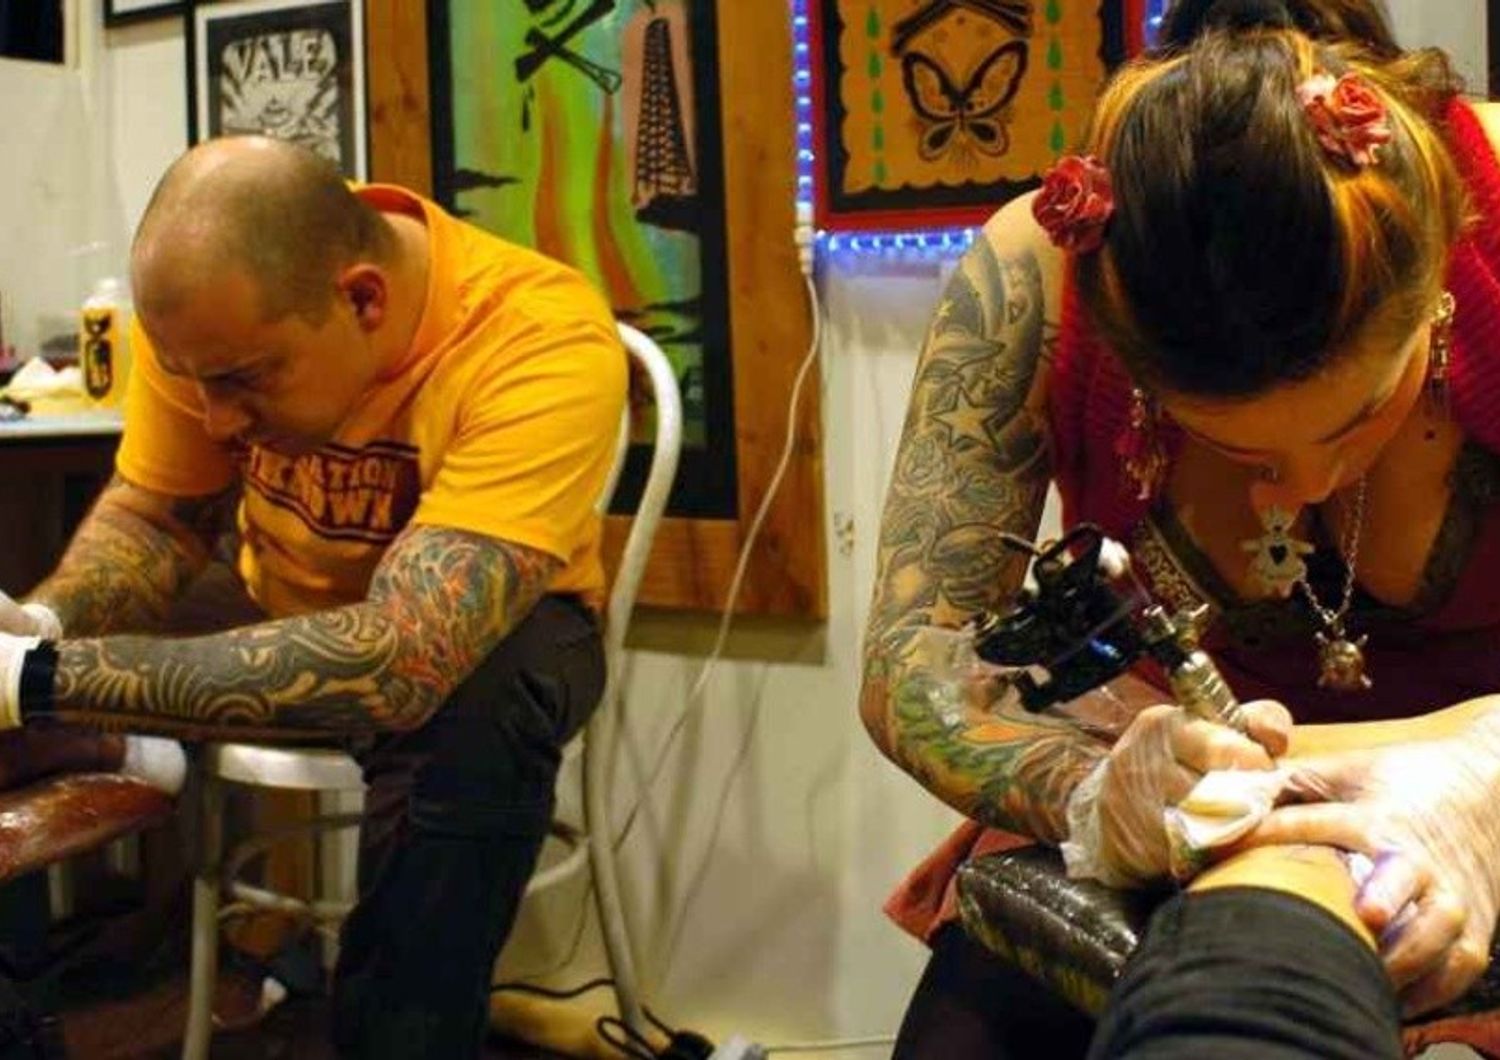 Tatuaggi e piercing: esperti lanciano l'allarme, rischio infezioni ed epatiti in un caso su quattro